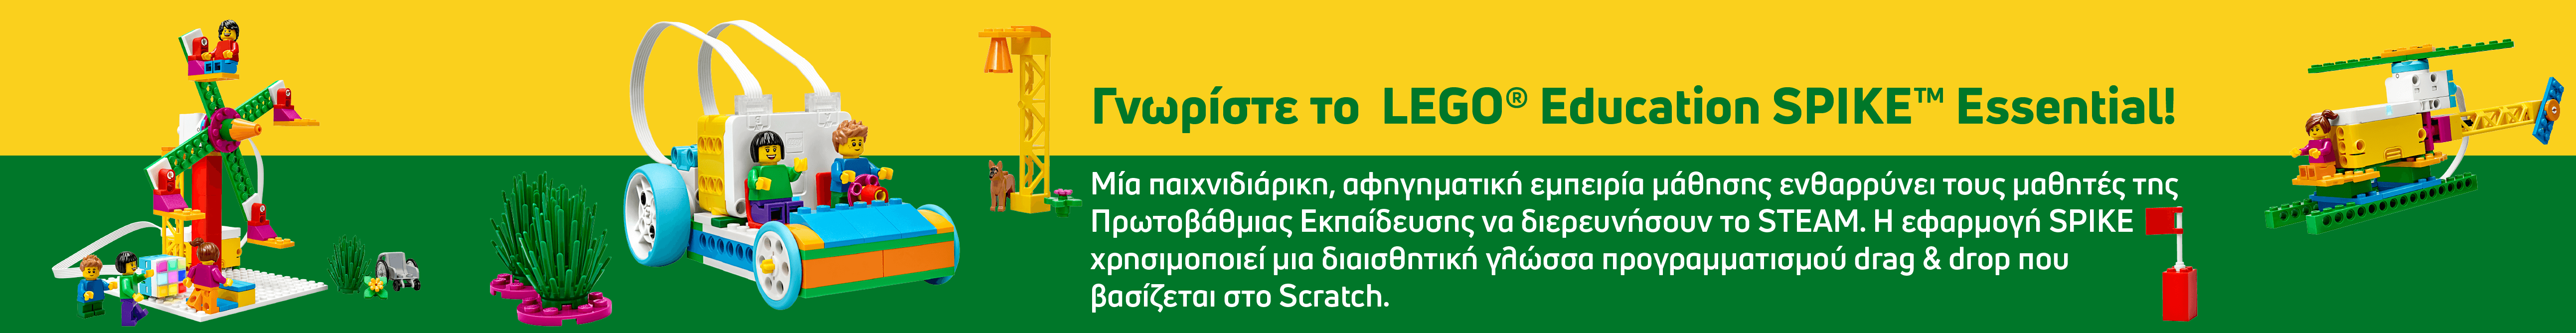 lego-education-spike-essential